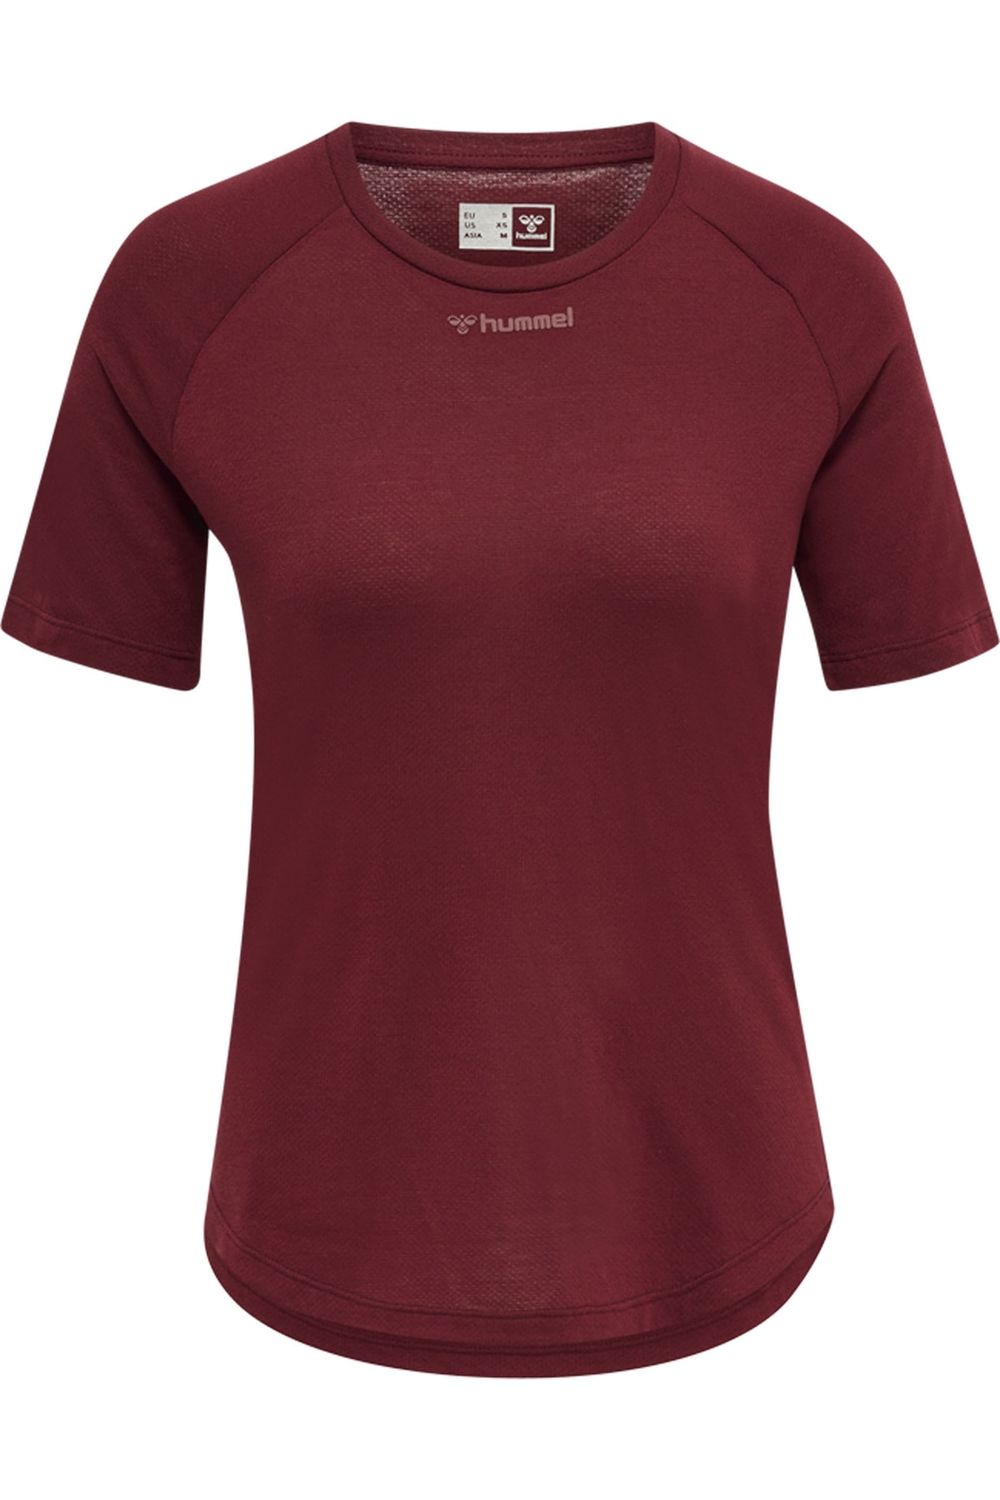 [Herausforderung, Nr. 1 zu sein!] HUMMEL T-Shirt Fit - Braun - Regular - Trendyol